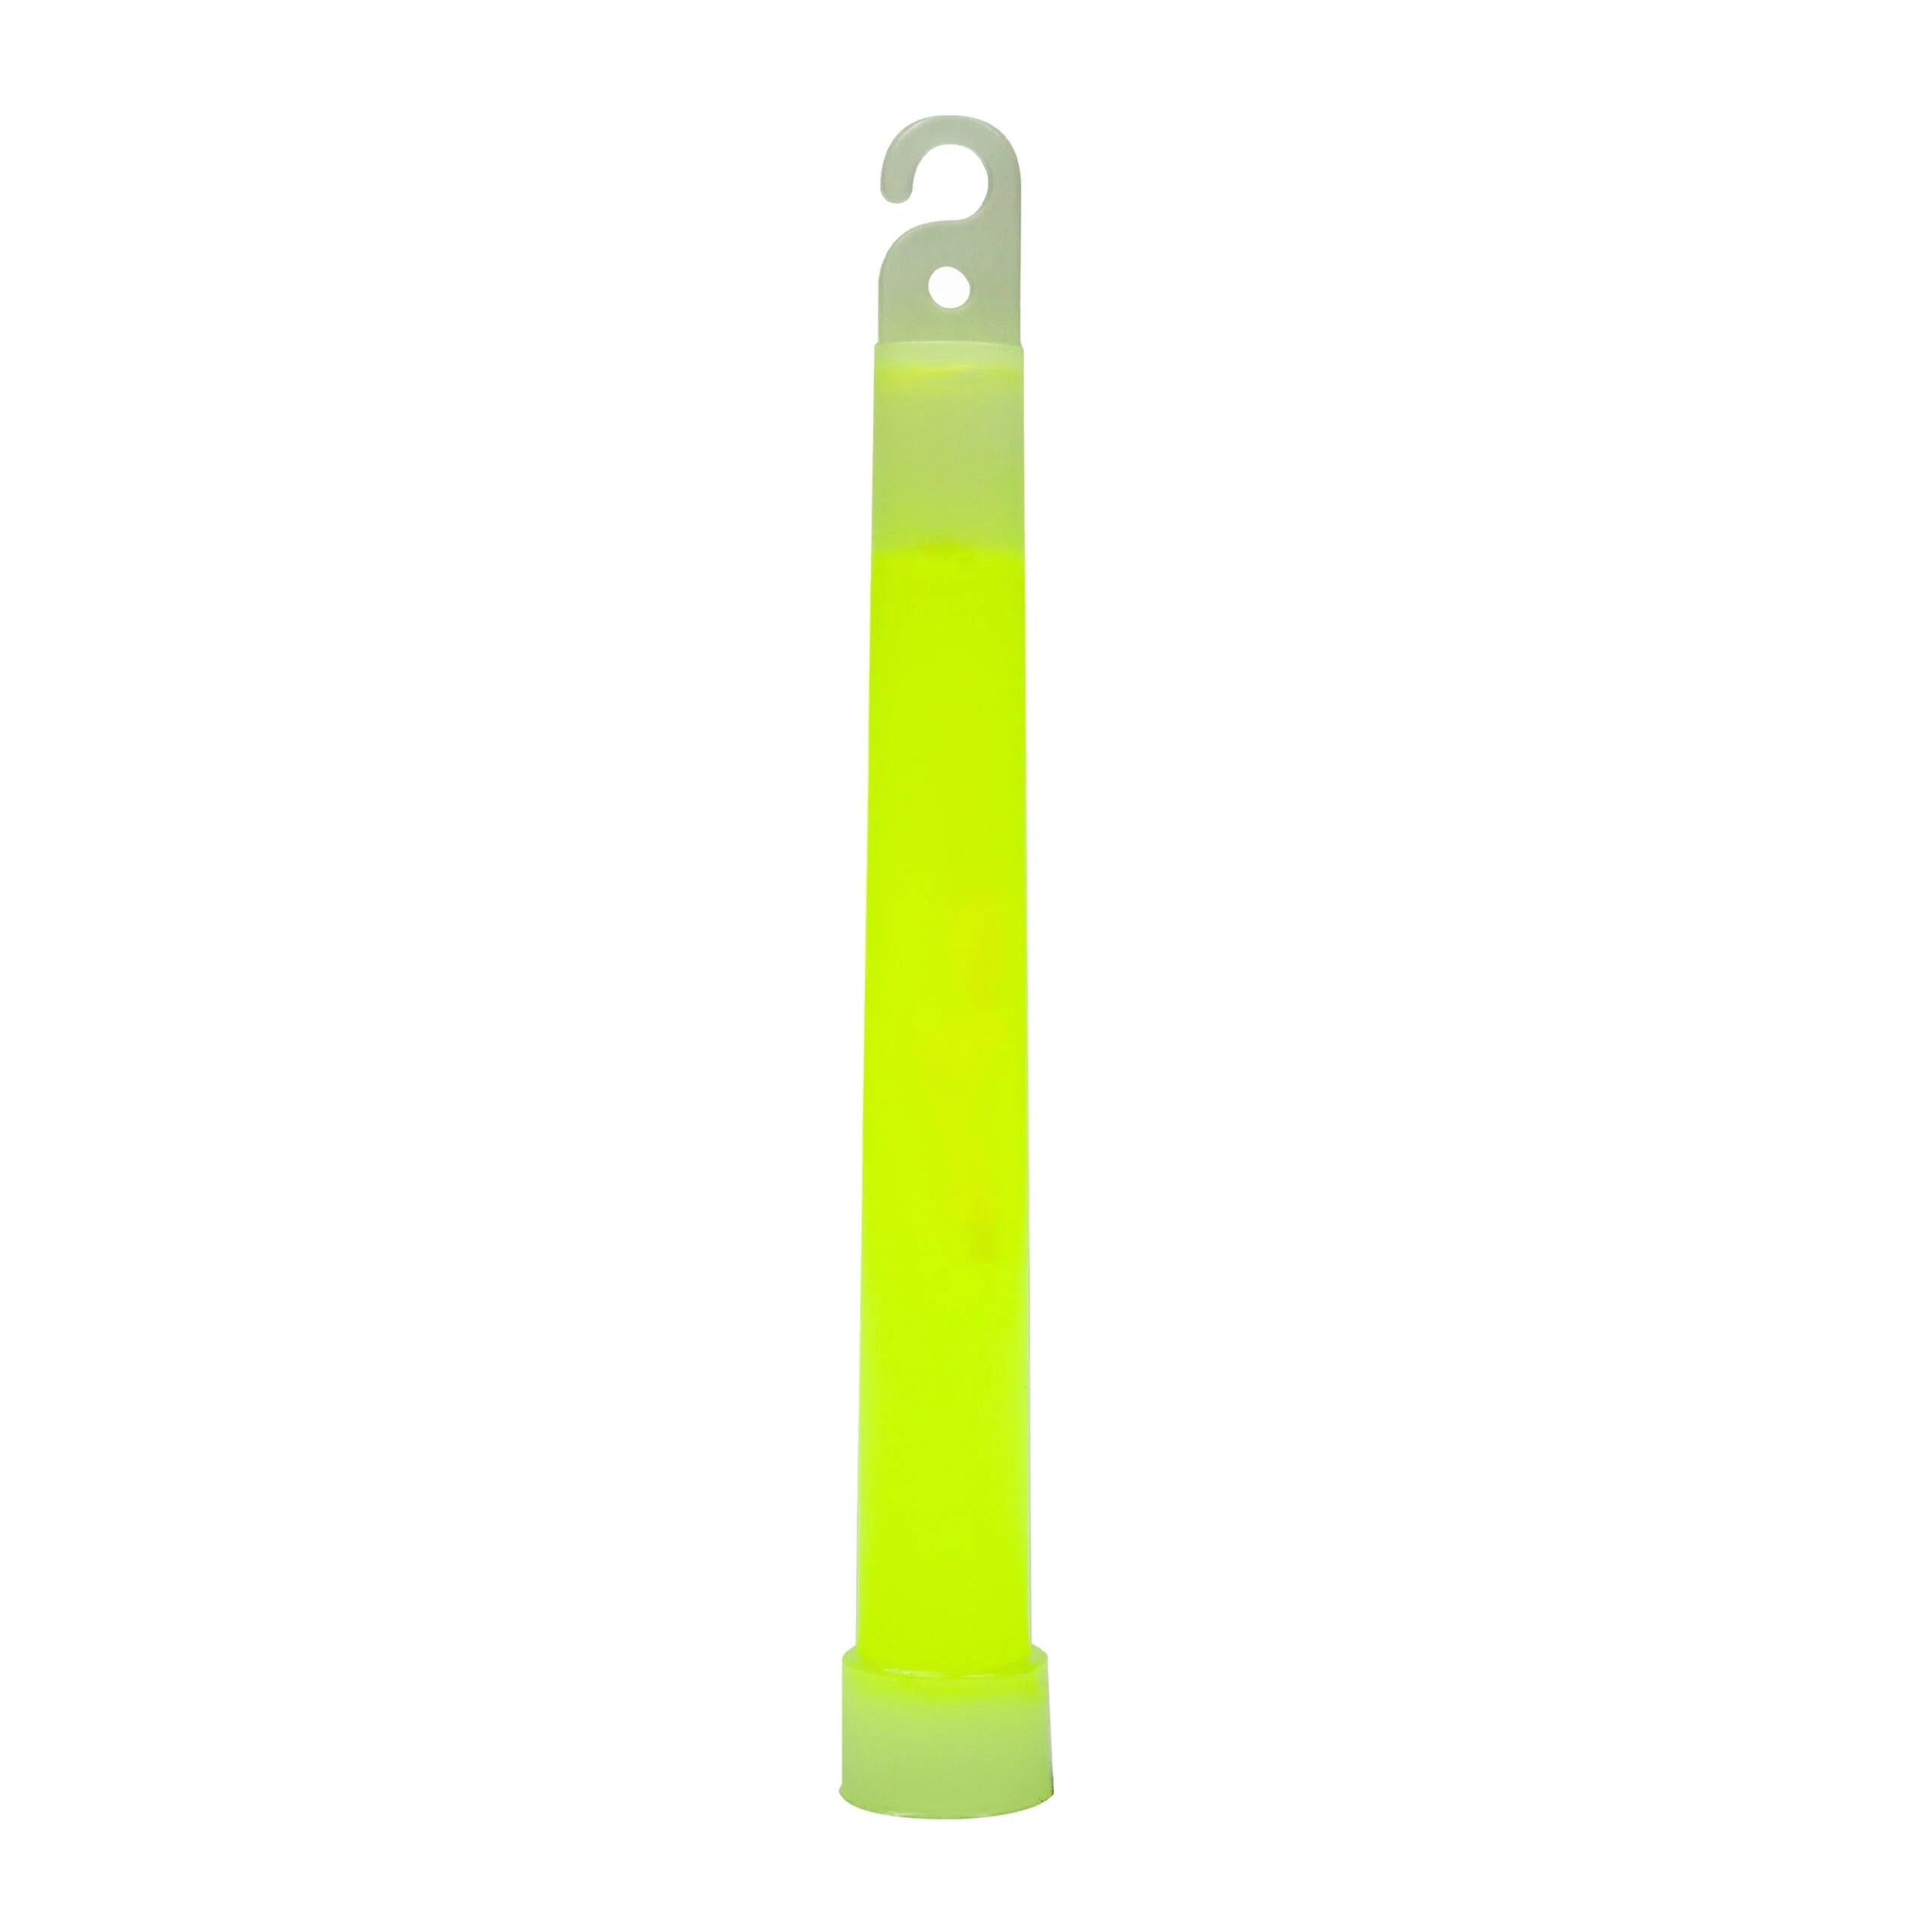 Promar - 6in Premium Glow Sticks